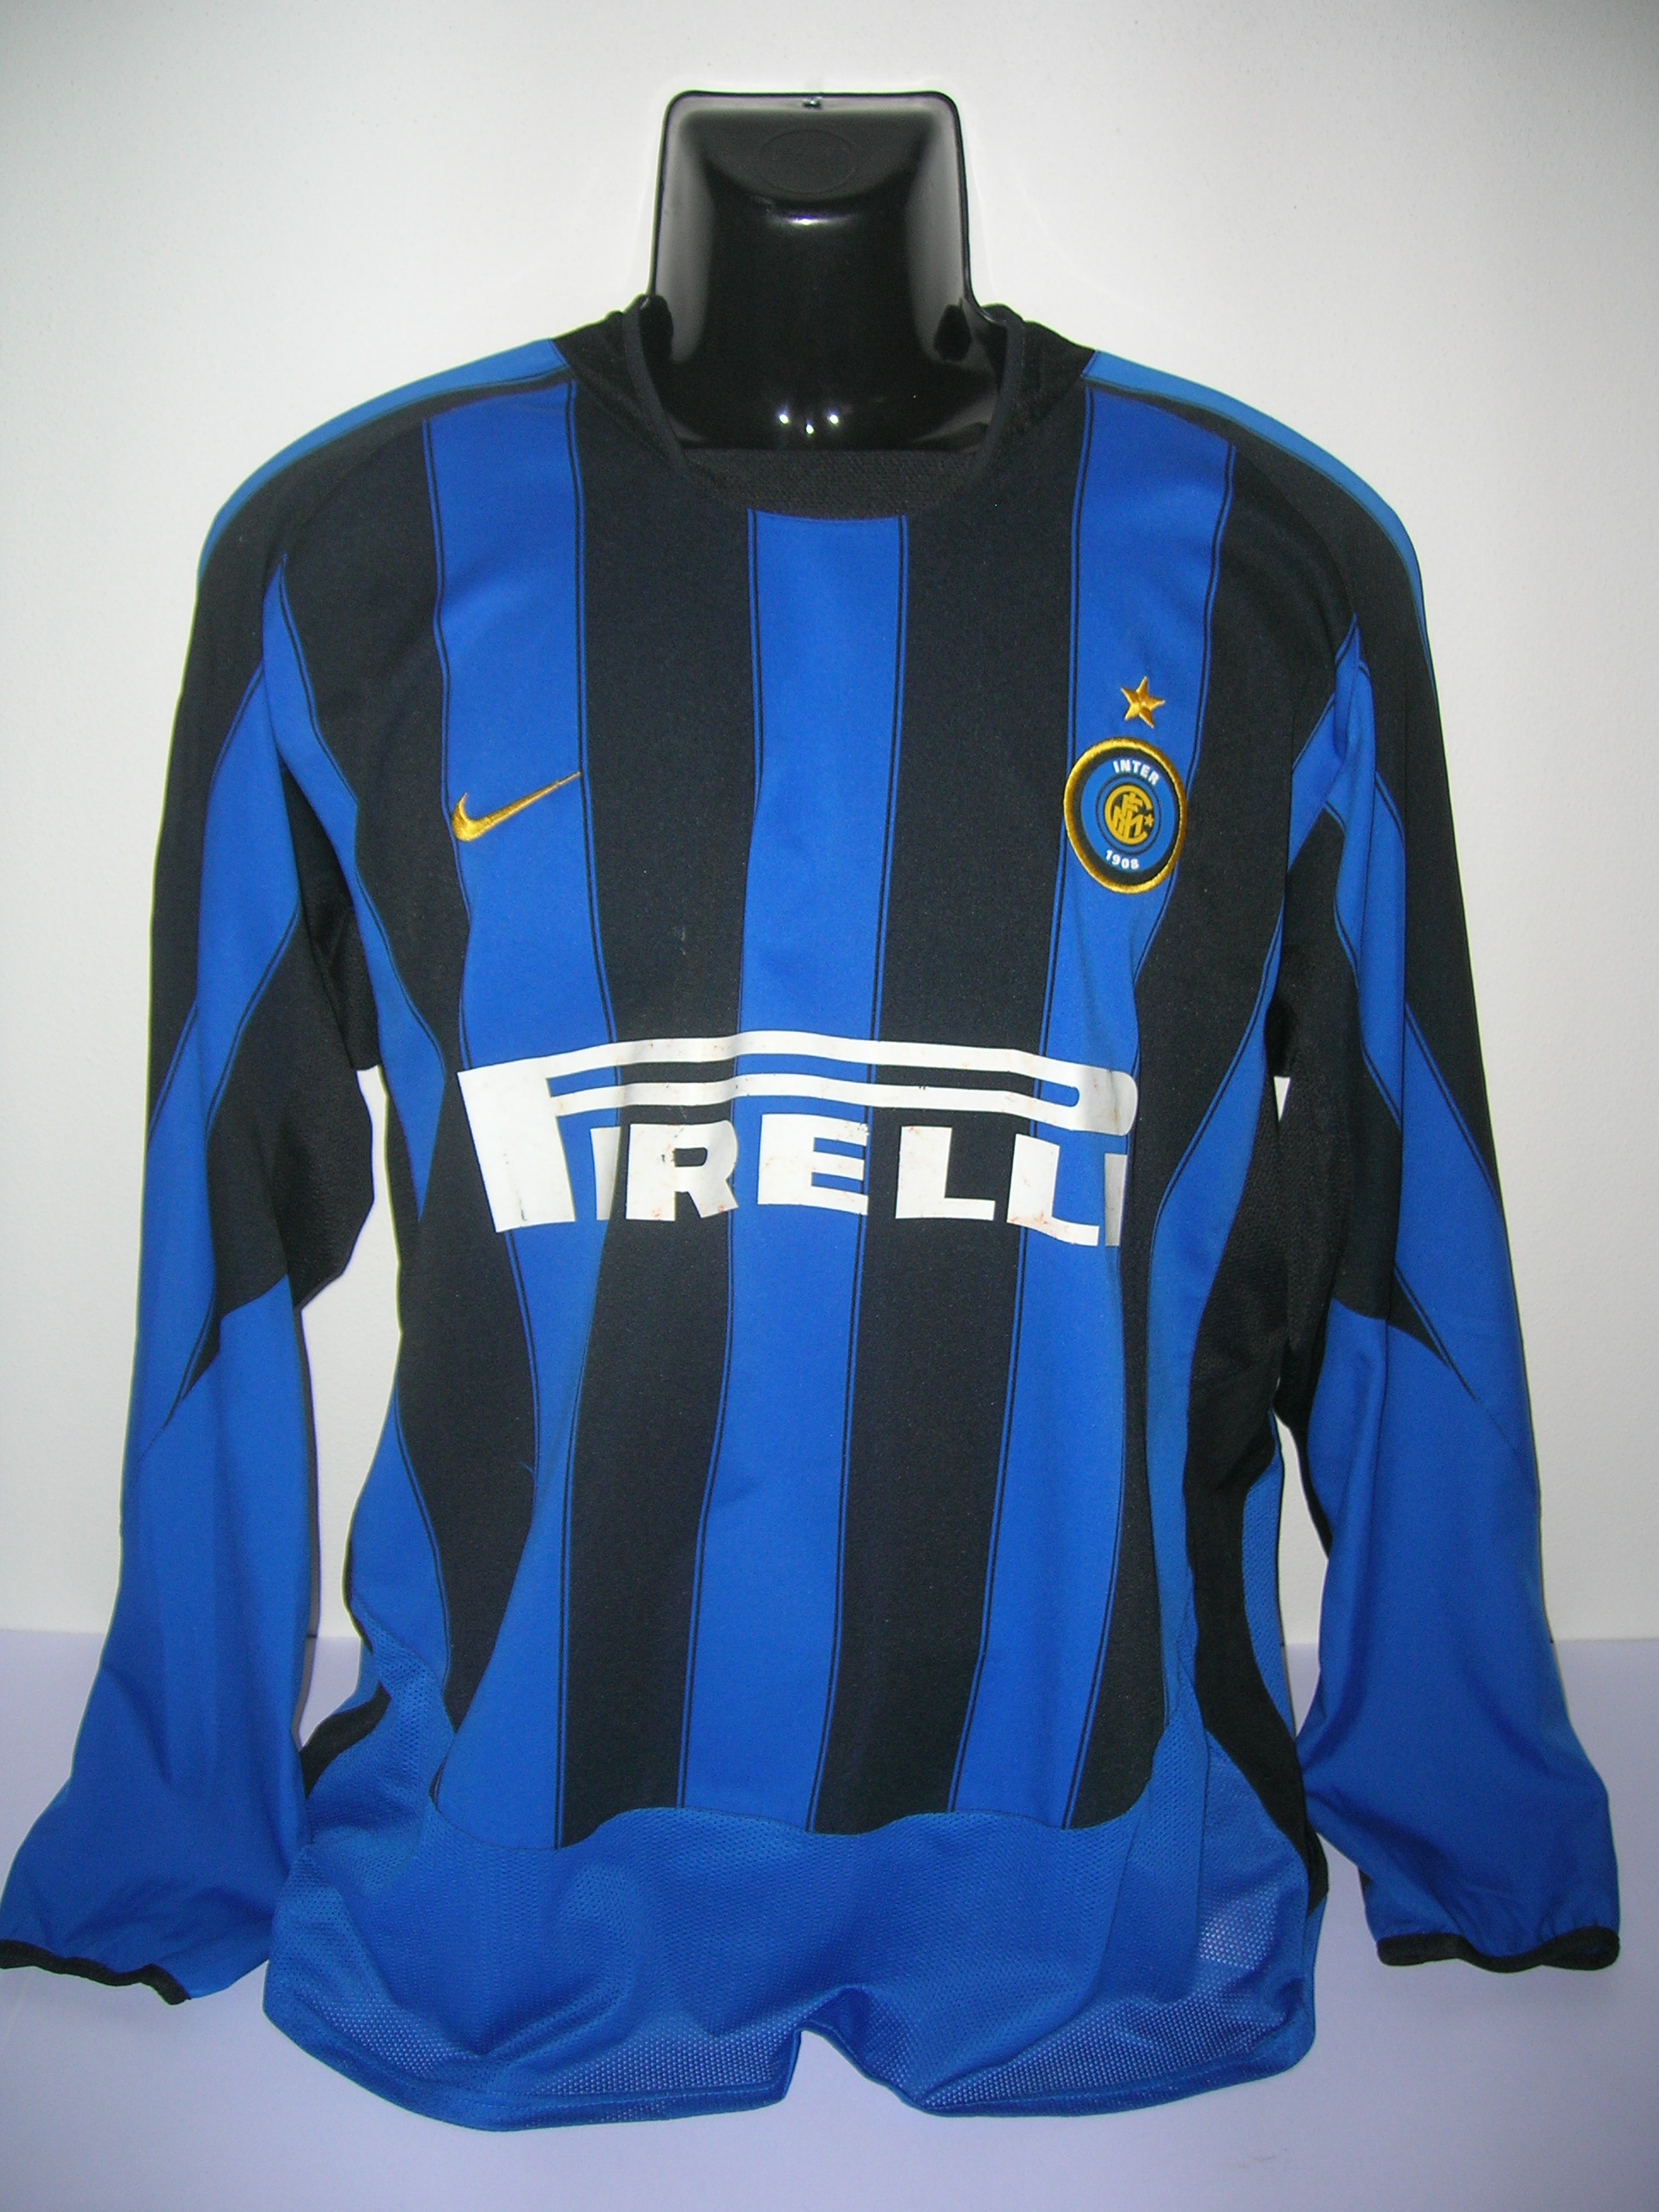 Cannavaro F. n.17 Inter A